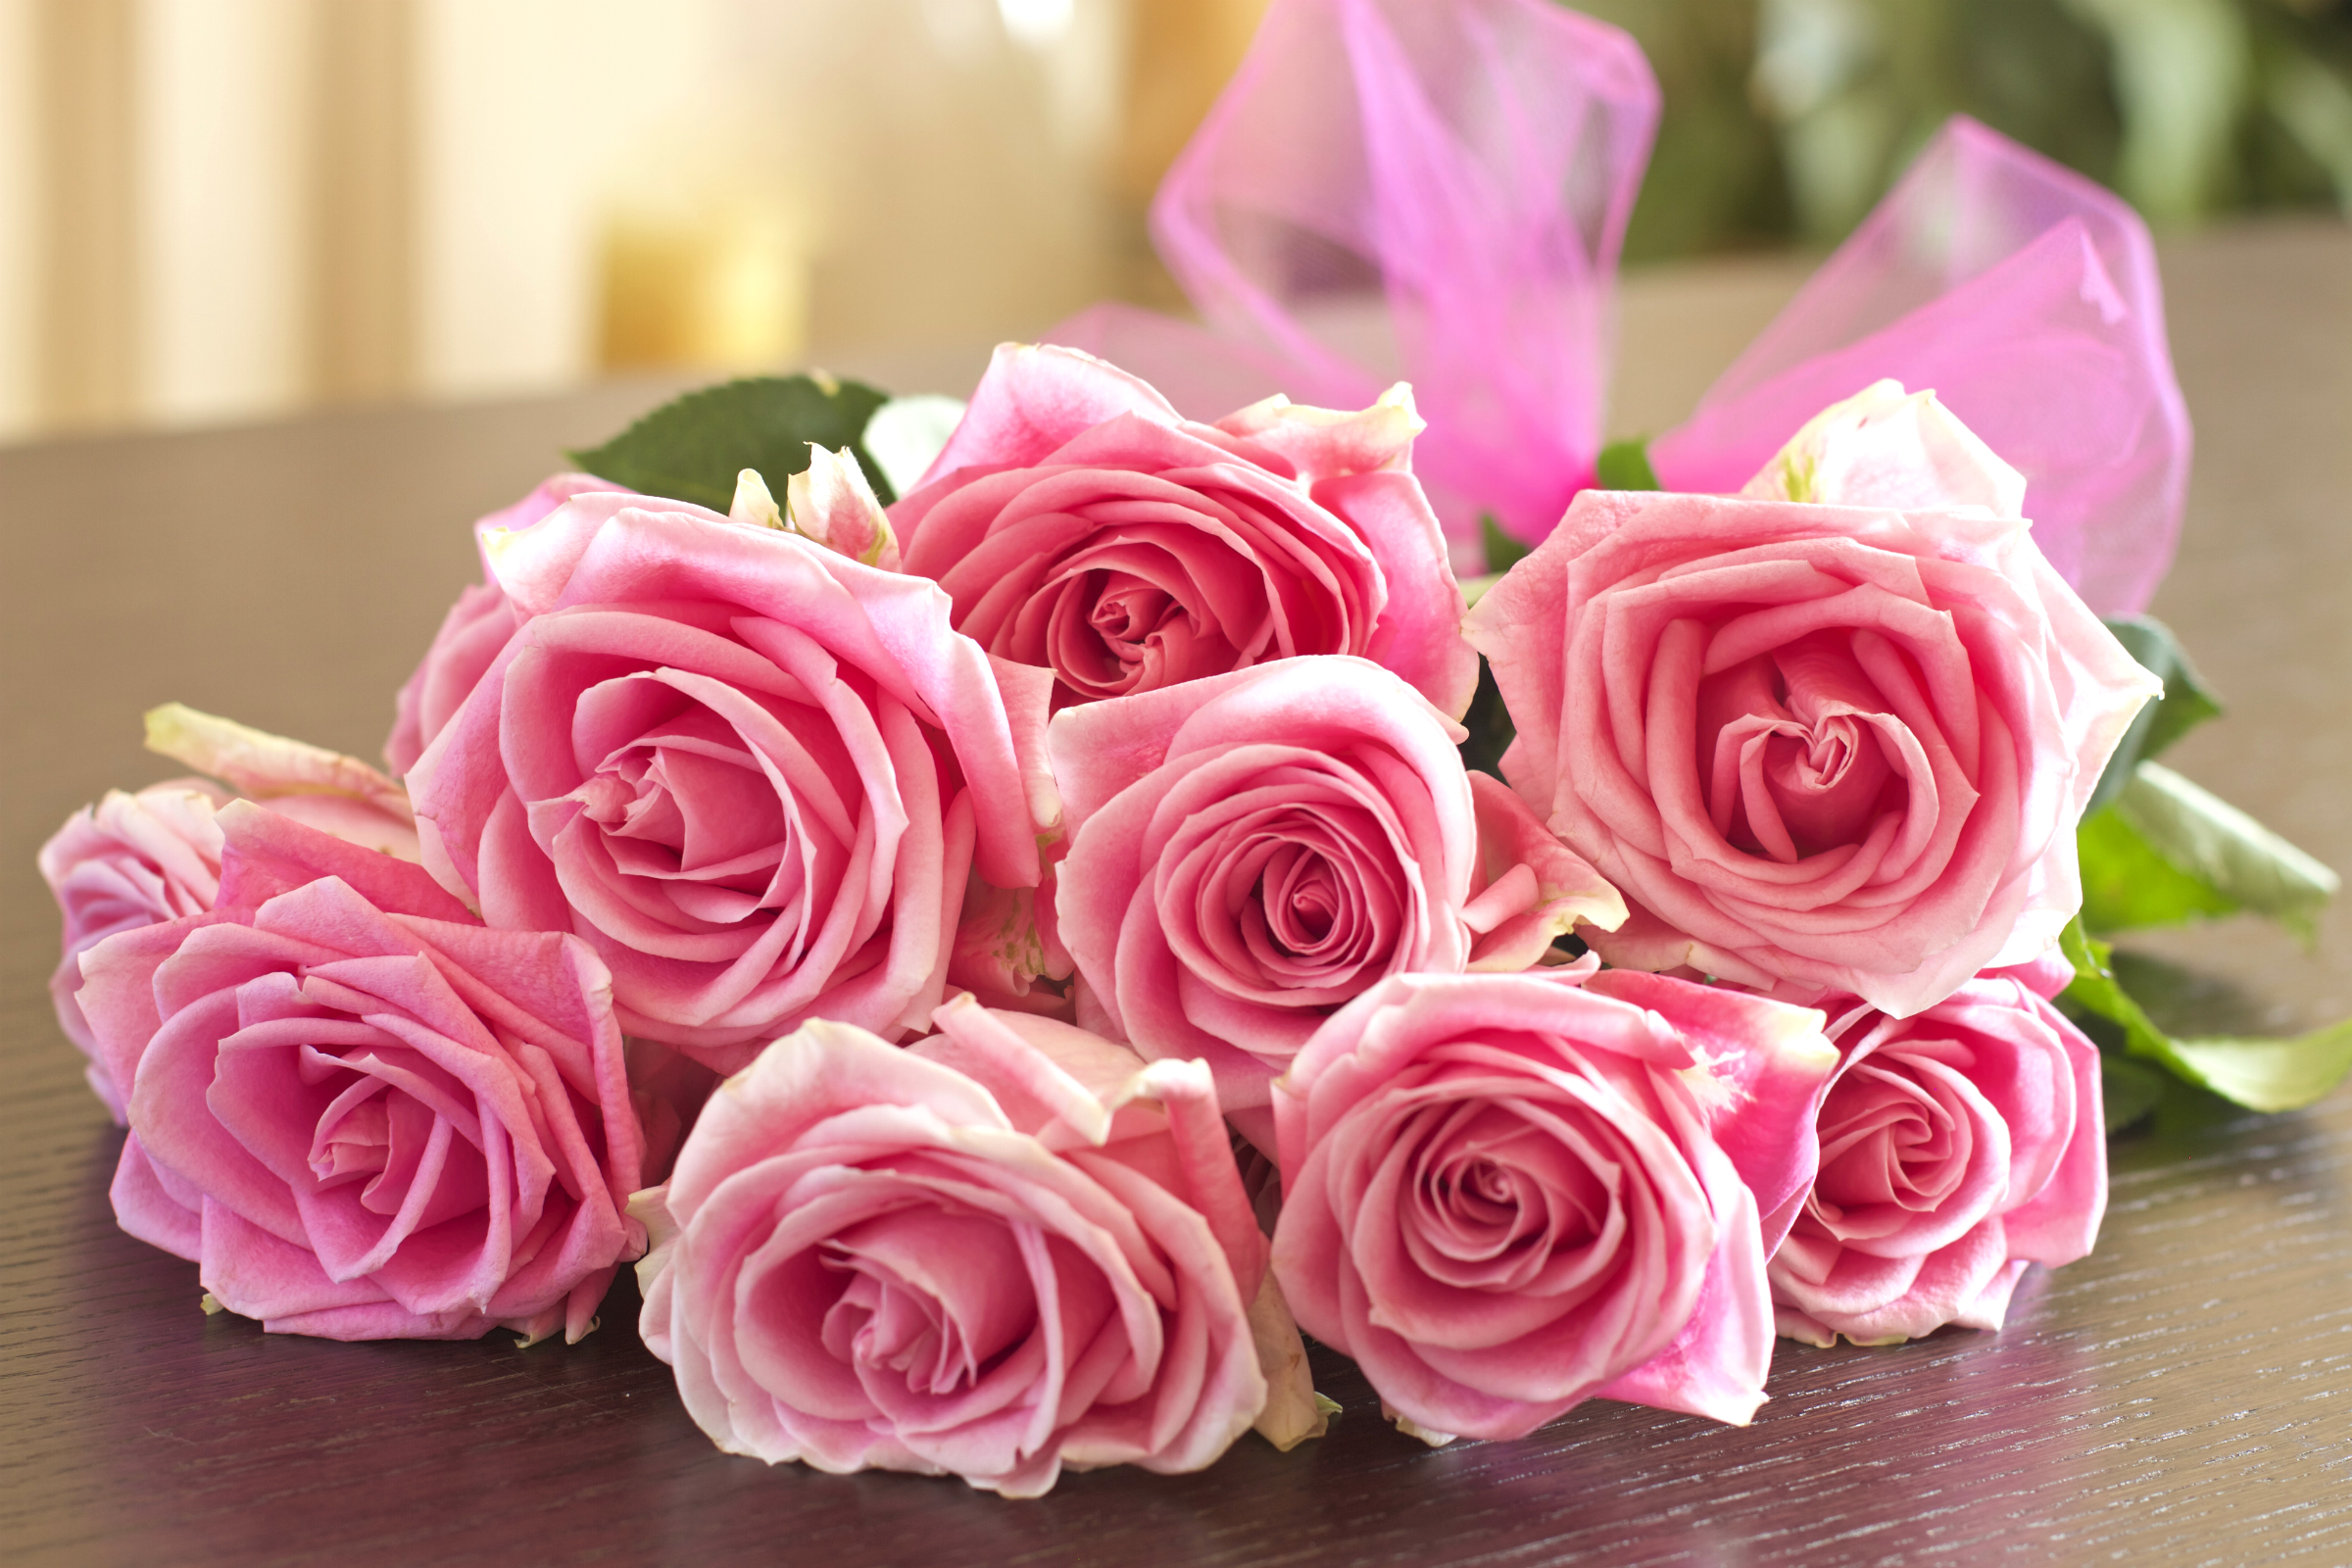 Фото букета розовых роз